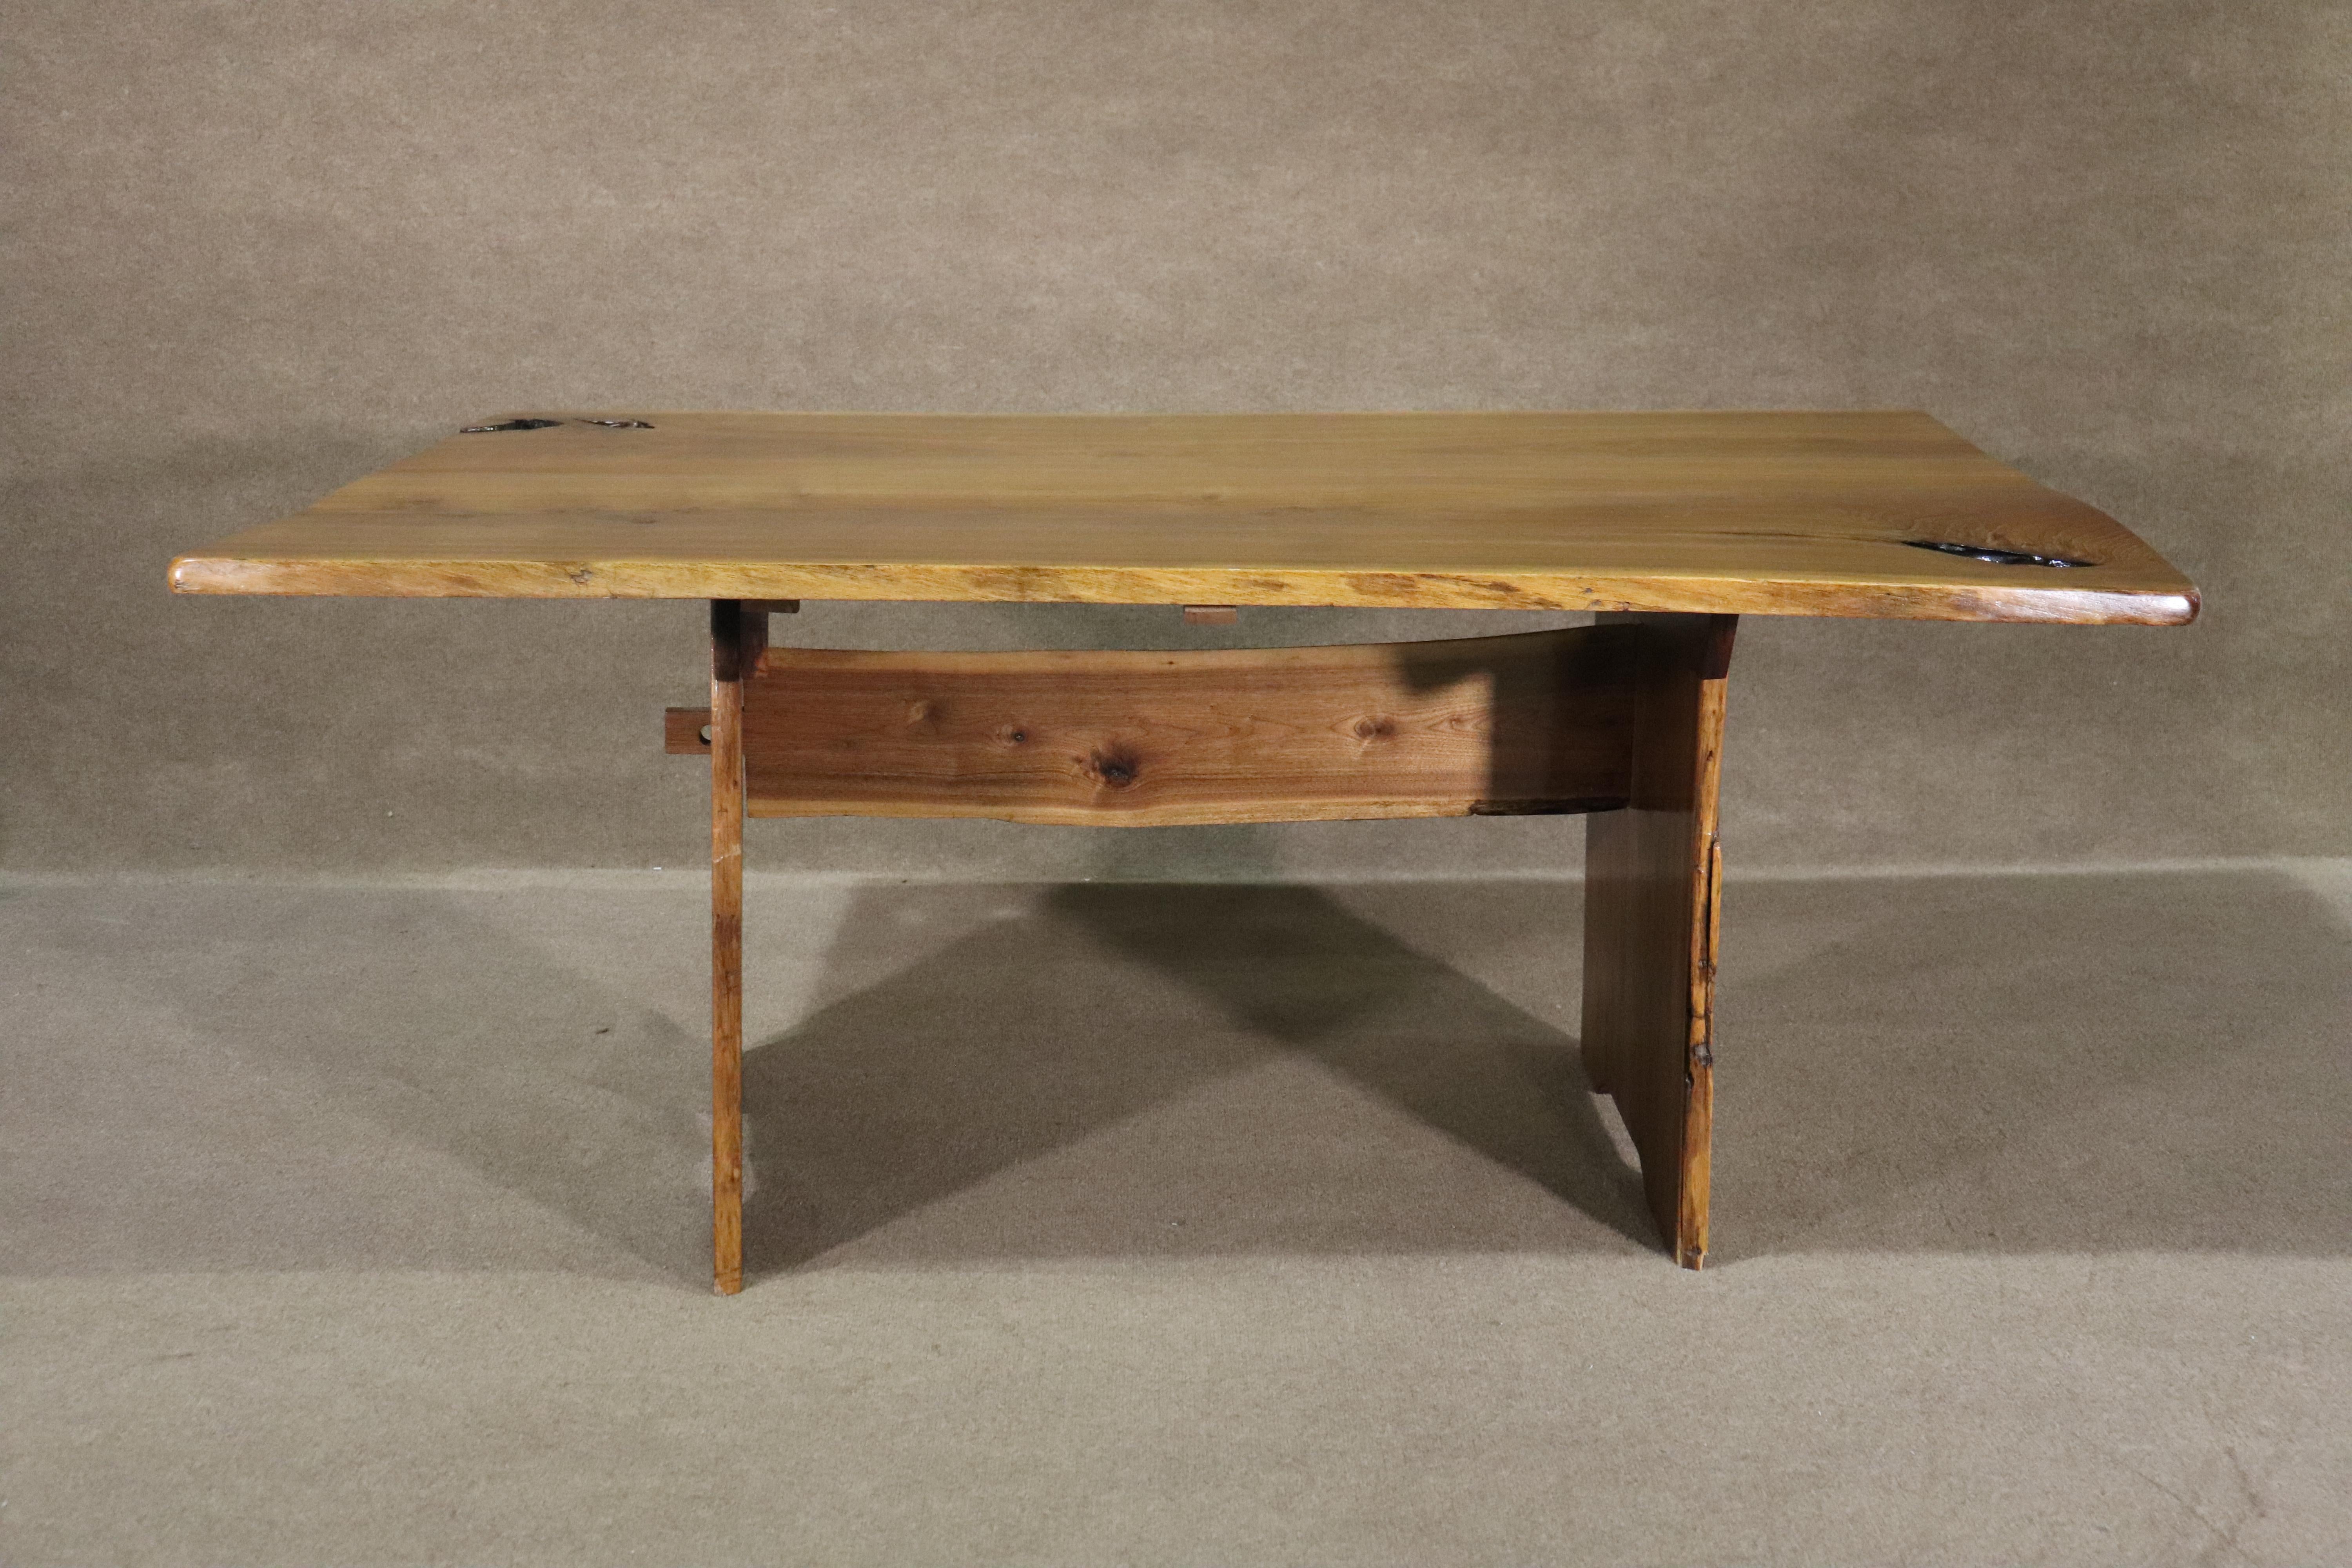 Großer, einzigartiger Esstisch, der aus einer einzigen Holzplatte gefertigt und auf einen Holzsockel gestellt wurde. Alle Teile haben eine rustikale, lebendige Kante, die dem Tisch eine Nakashima-Form verleiht.
Bitte bestätigen Sie den Standort NY